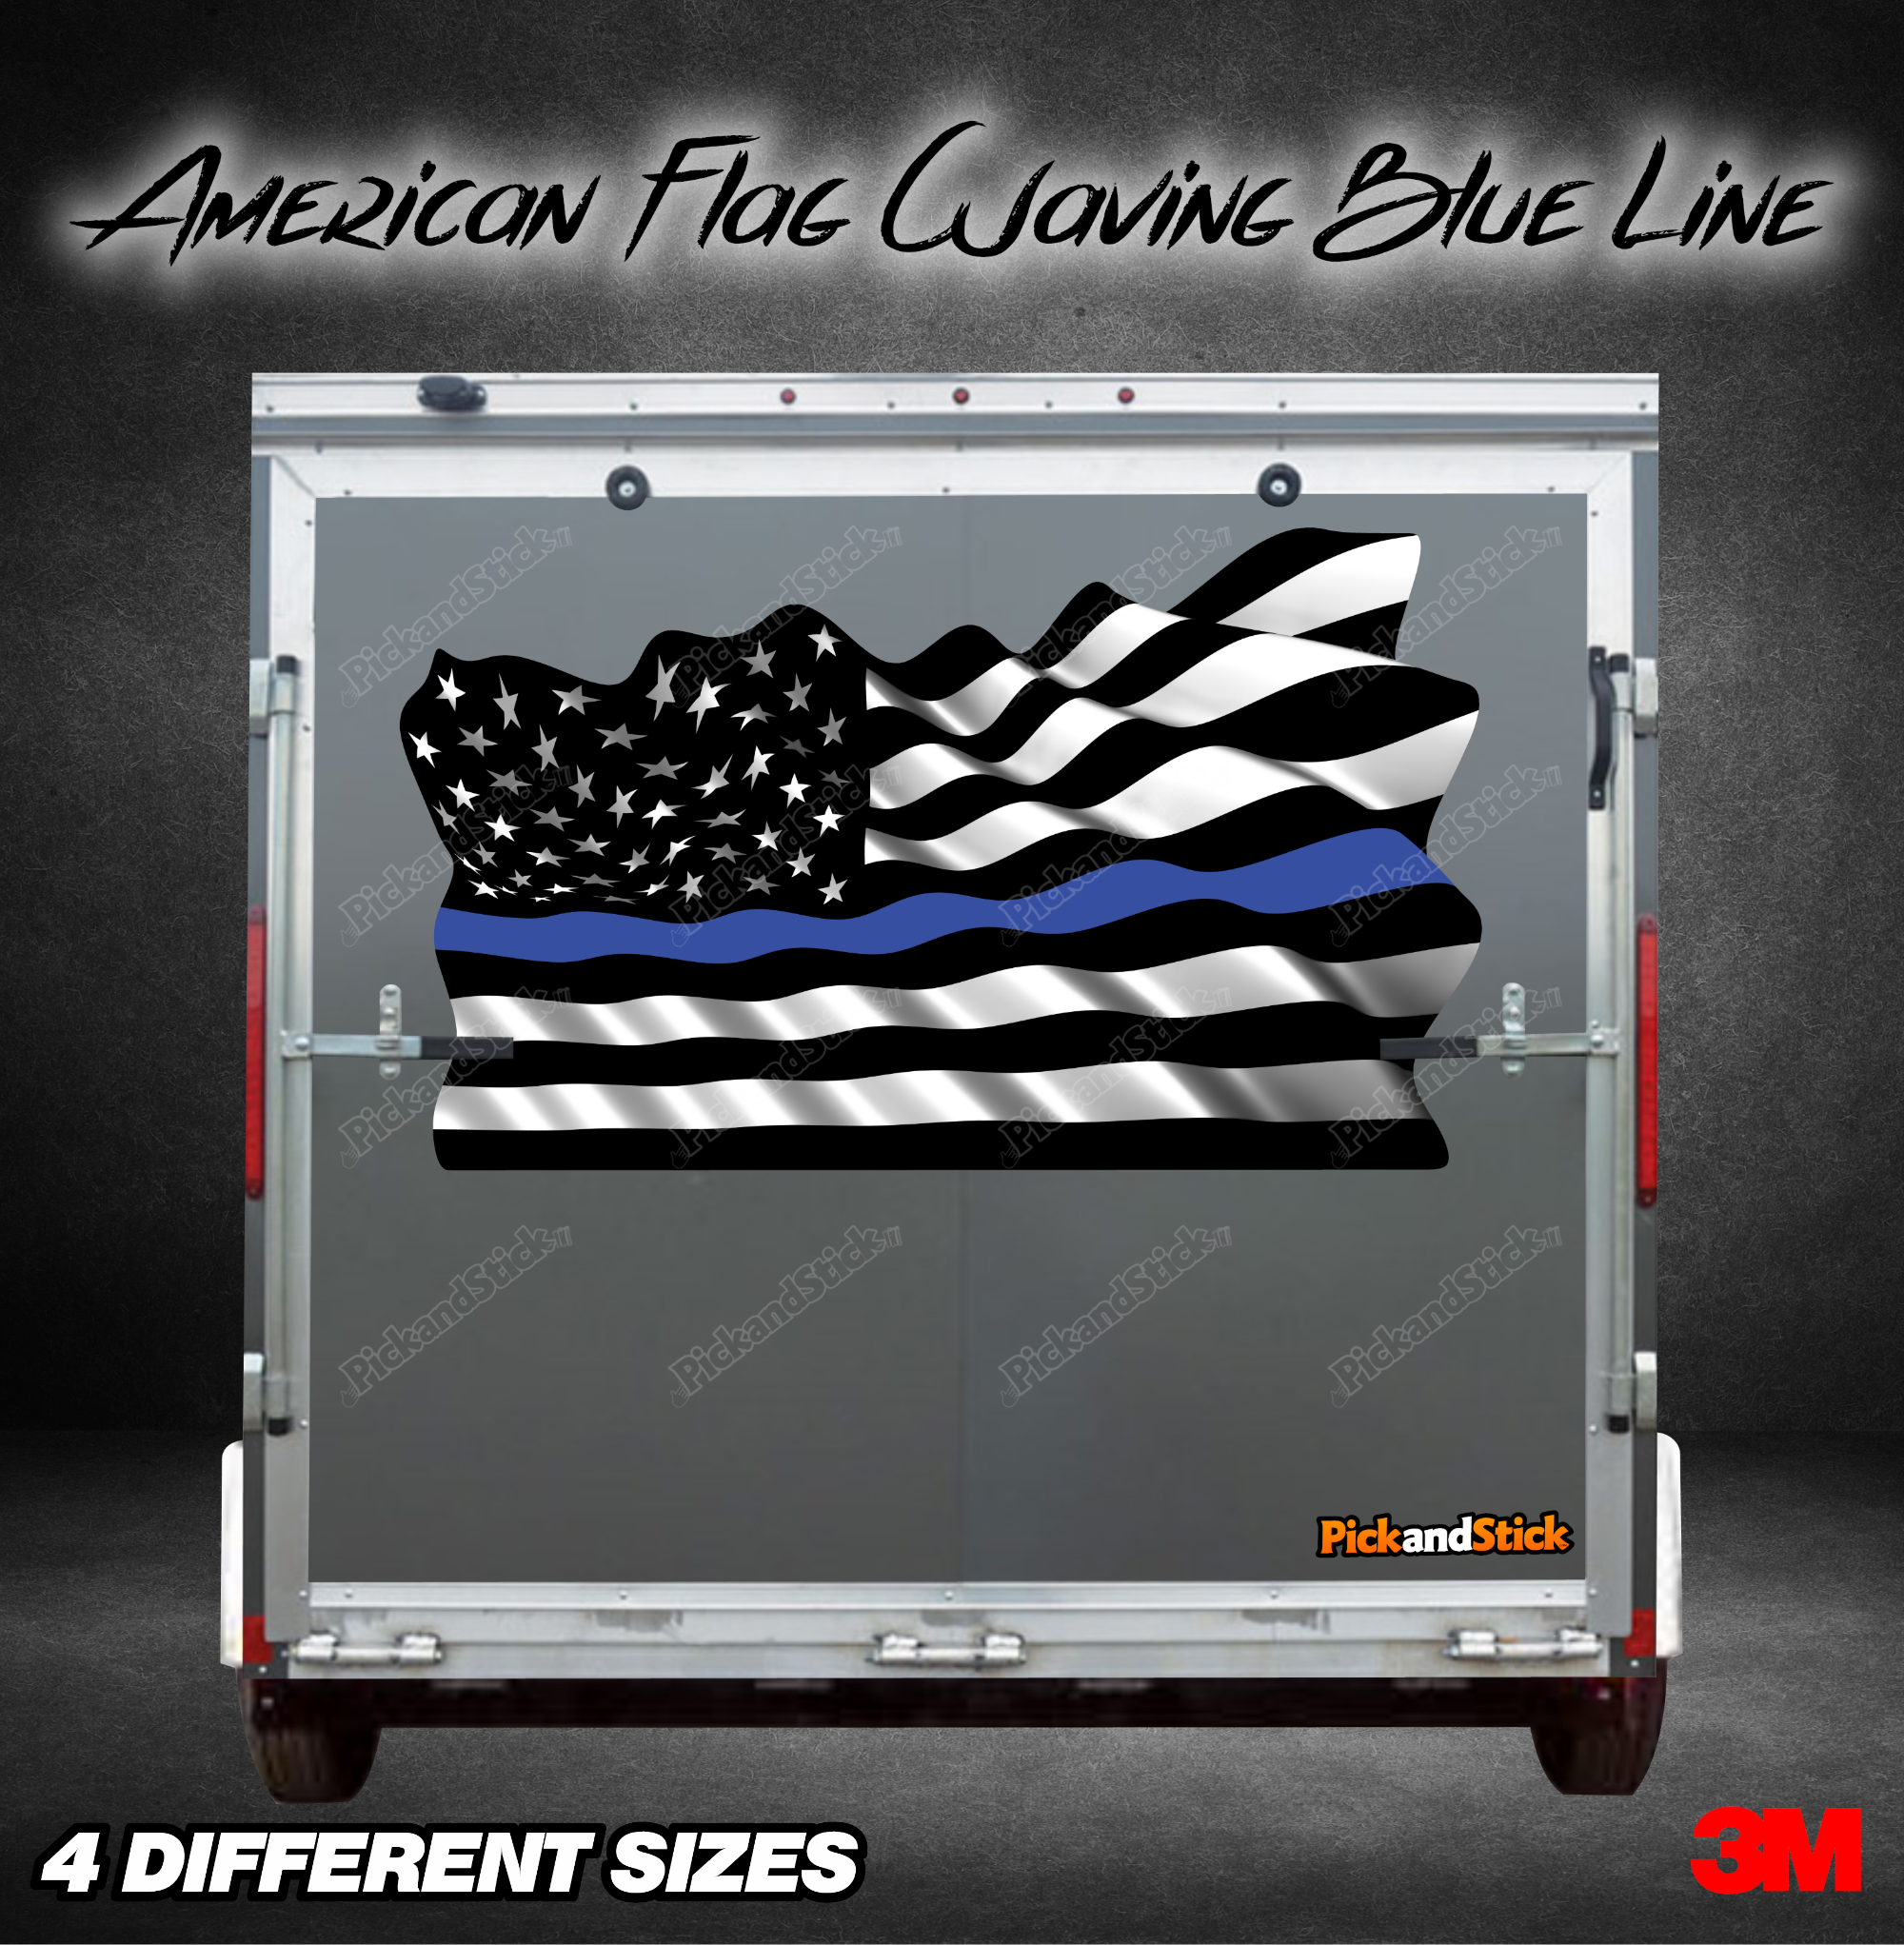 American Flag Waving Blue Line Graphic - PickandStickcom